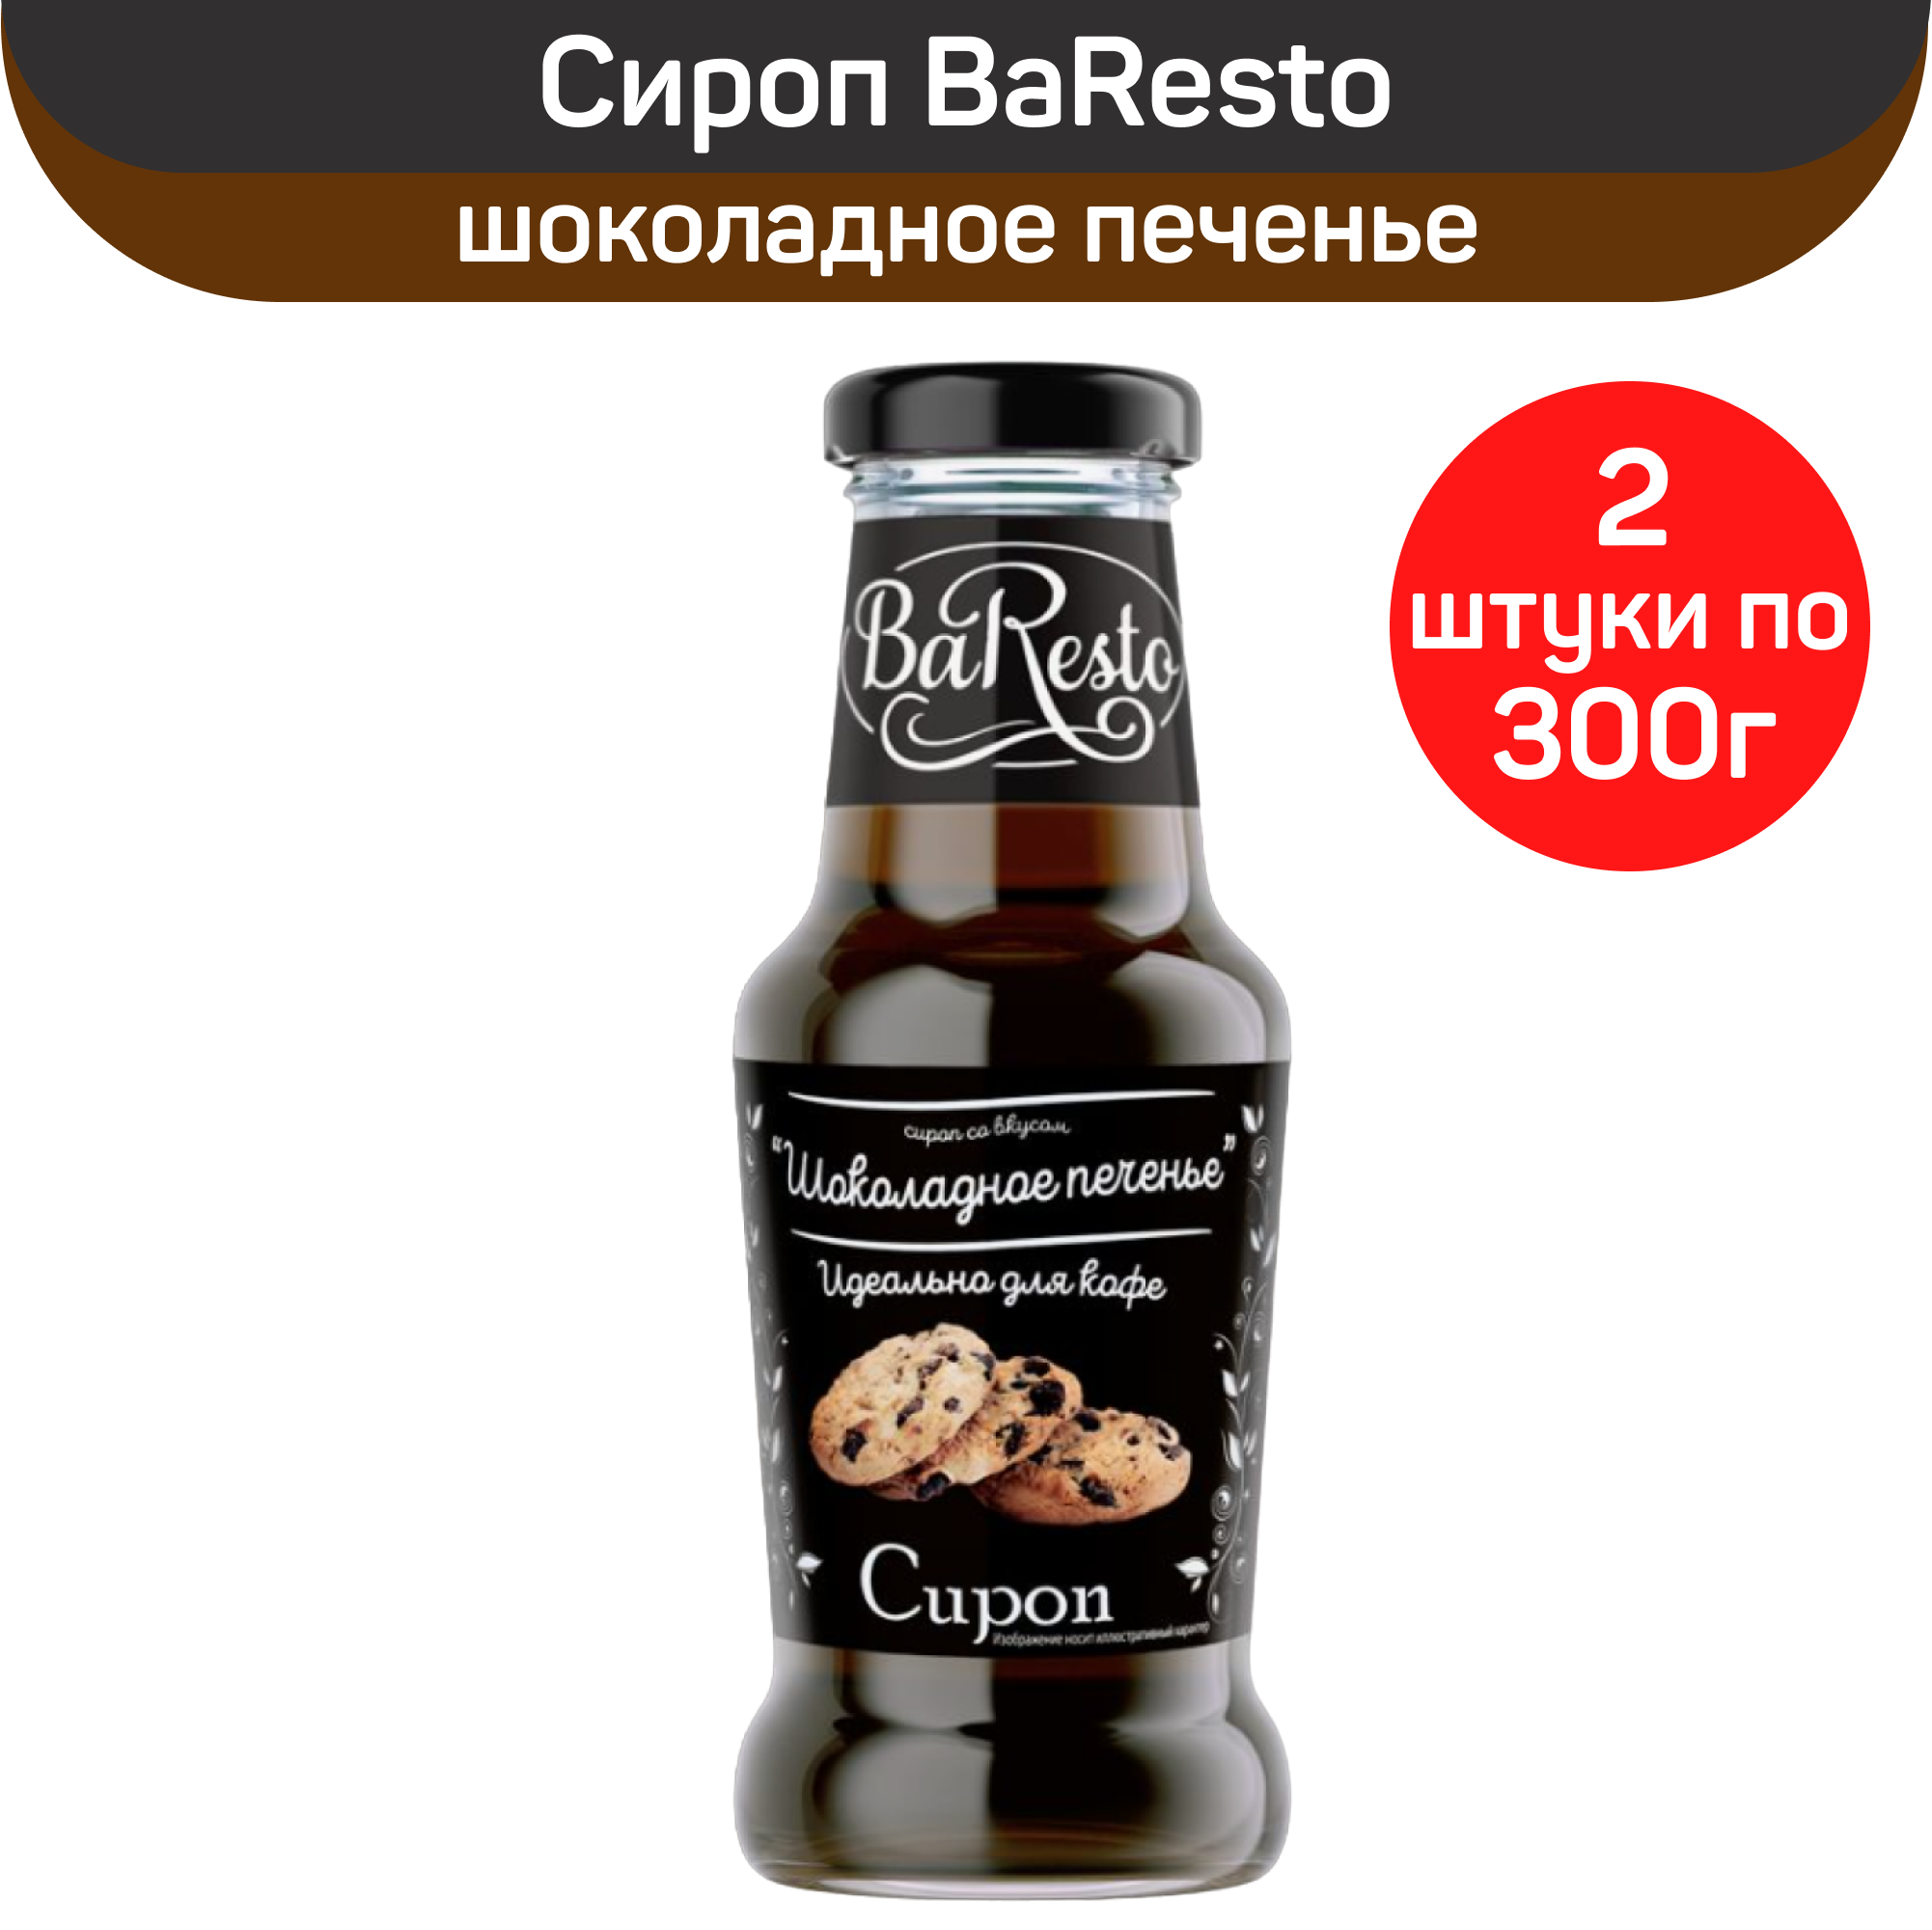 Сироп BaResto "Шоколадное печенье", 2 шт по 300 г